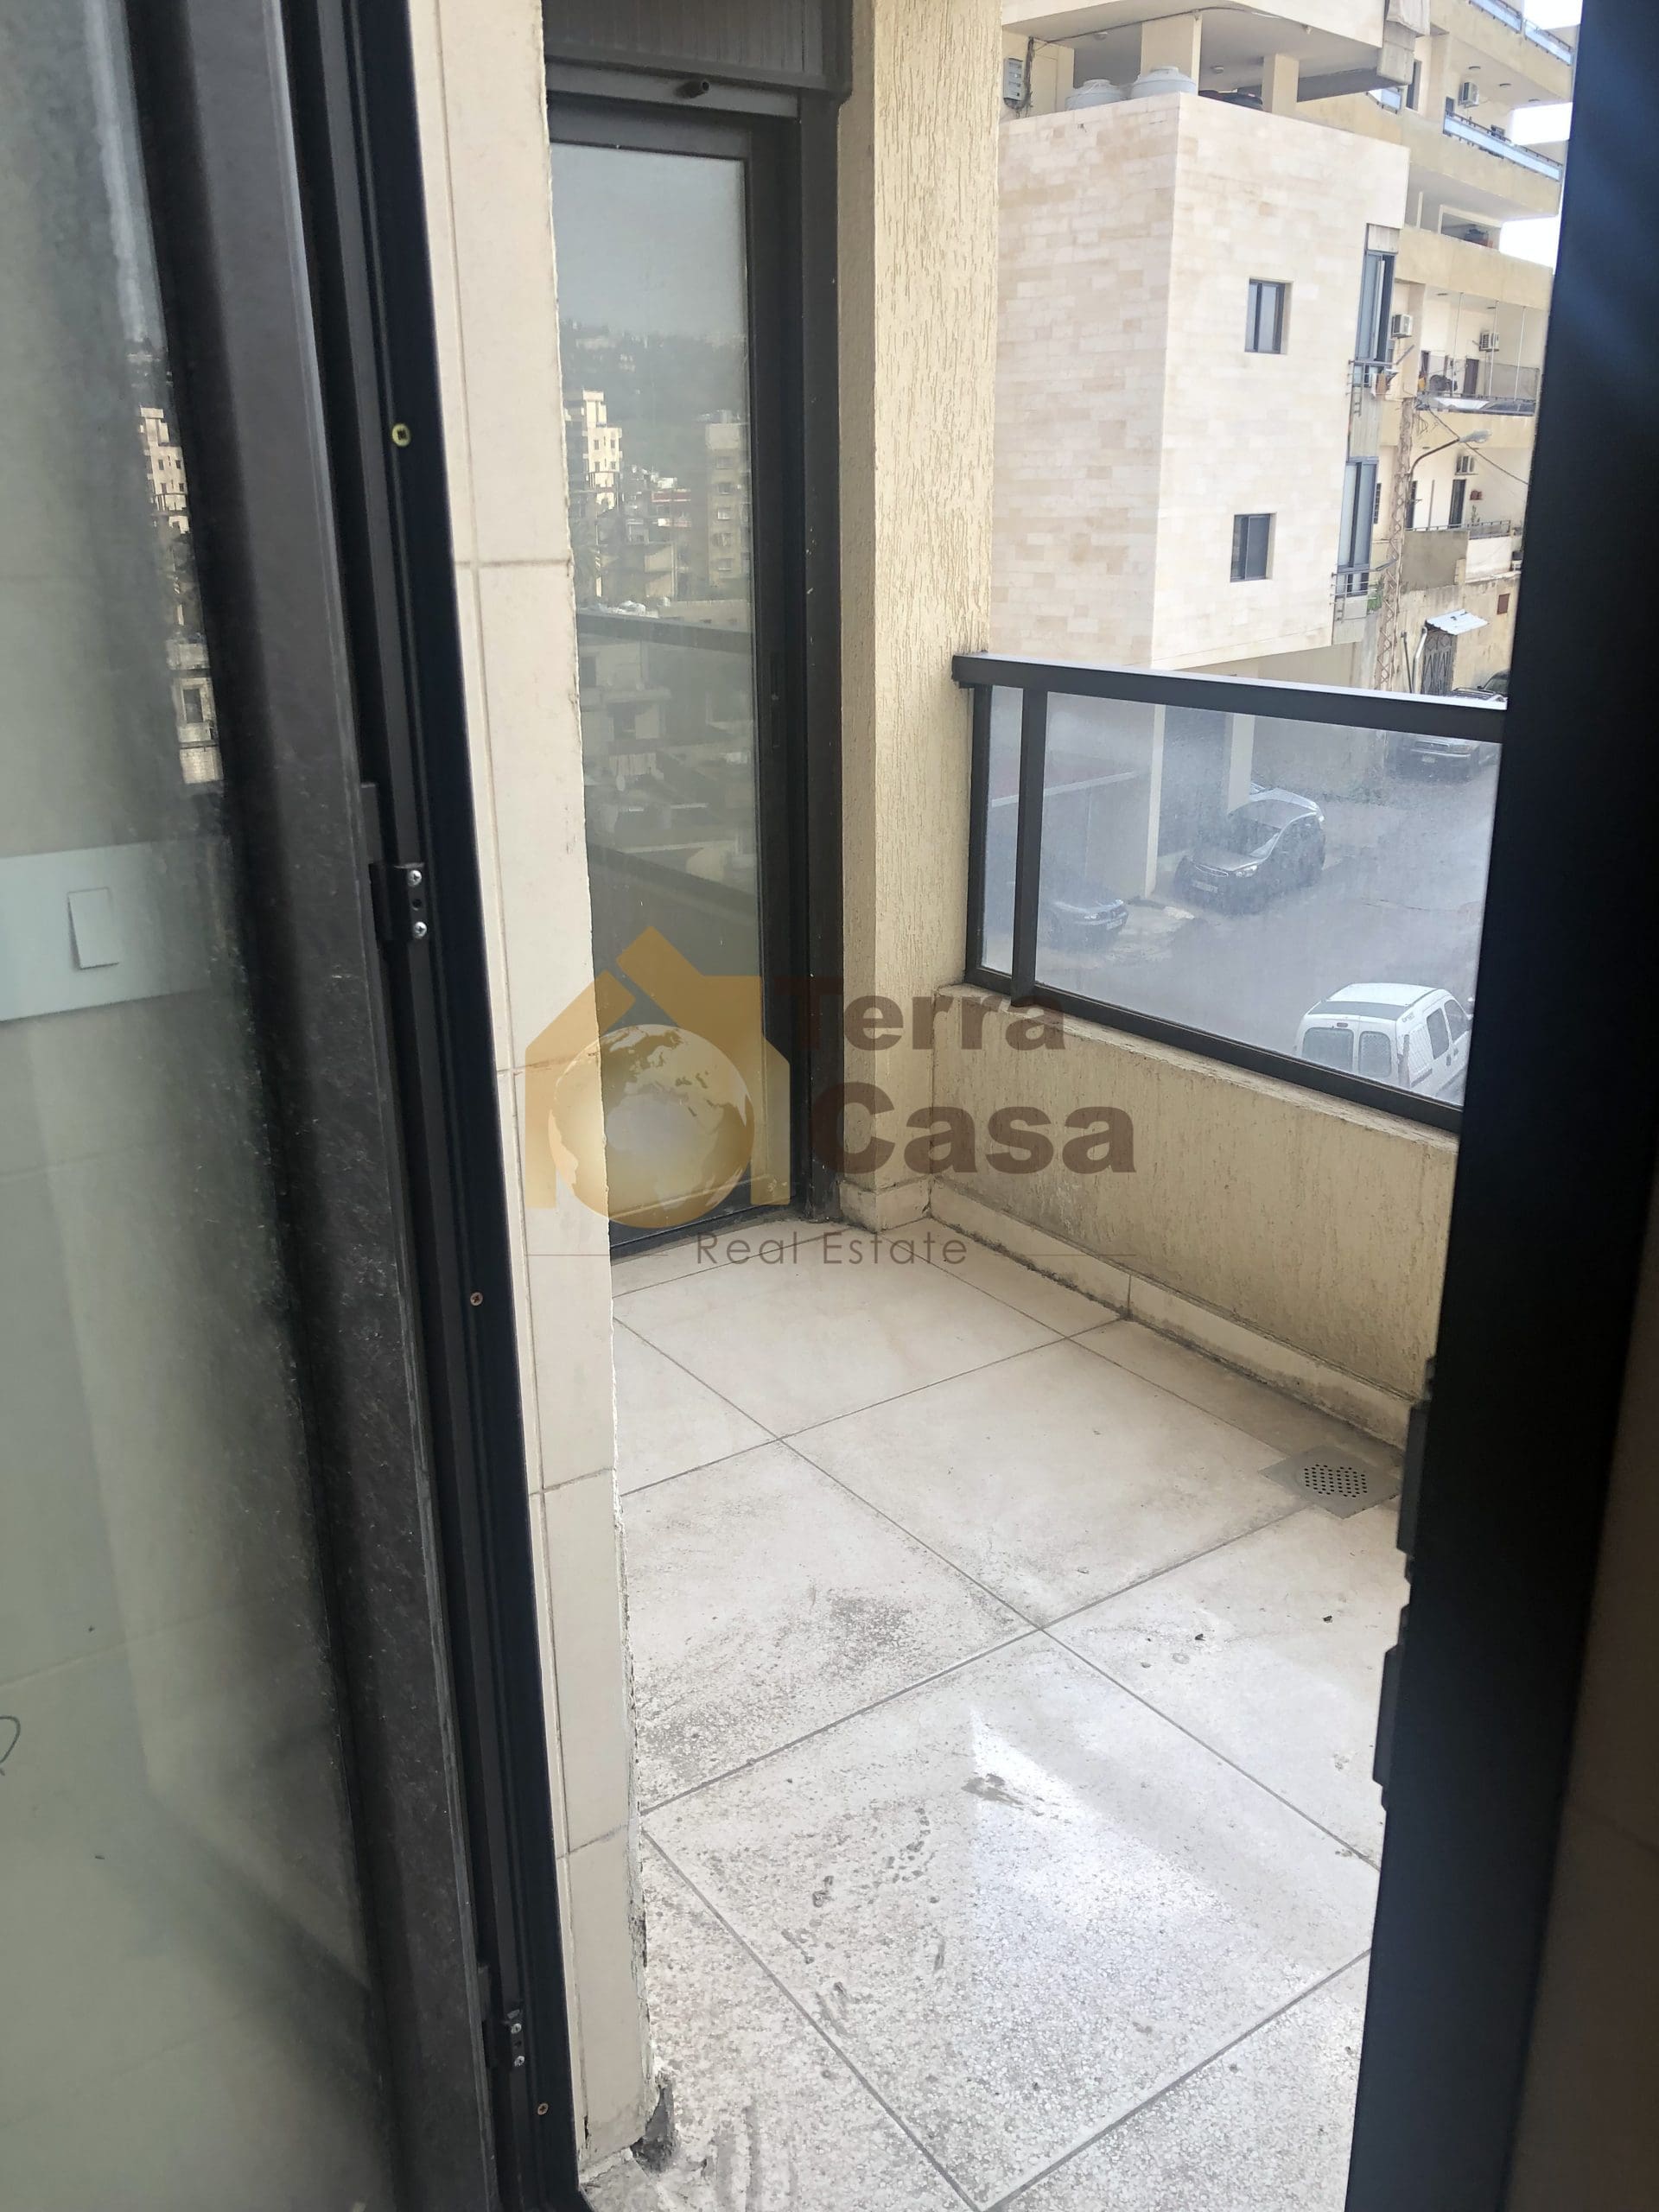 New apartment in kfarchima, sea view Ref#3718